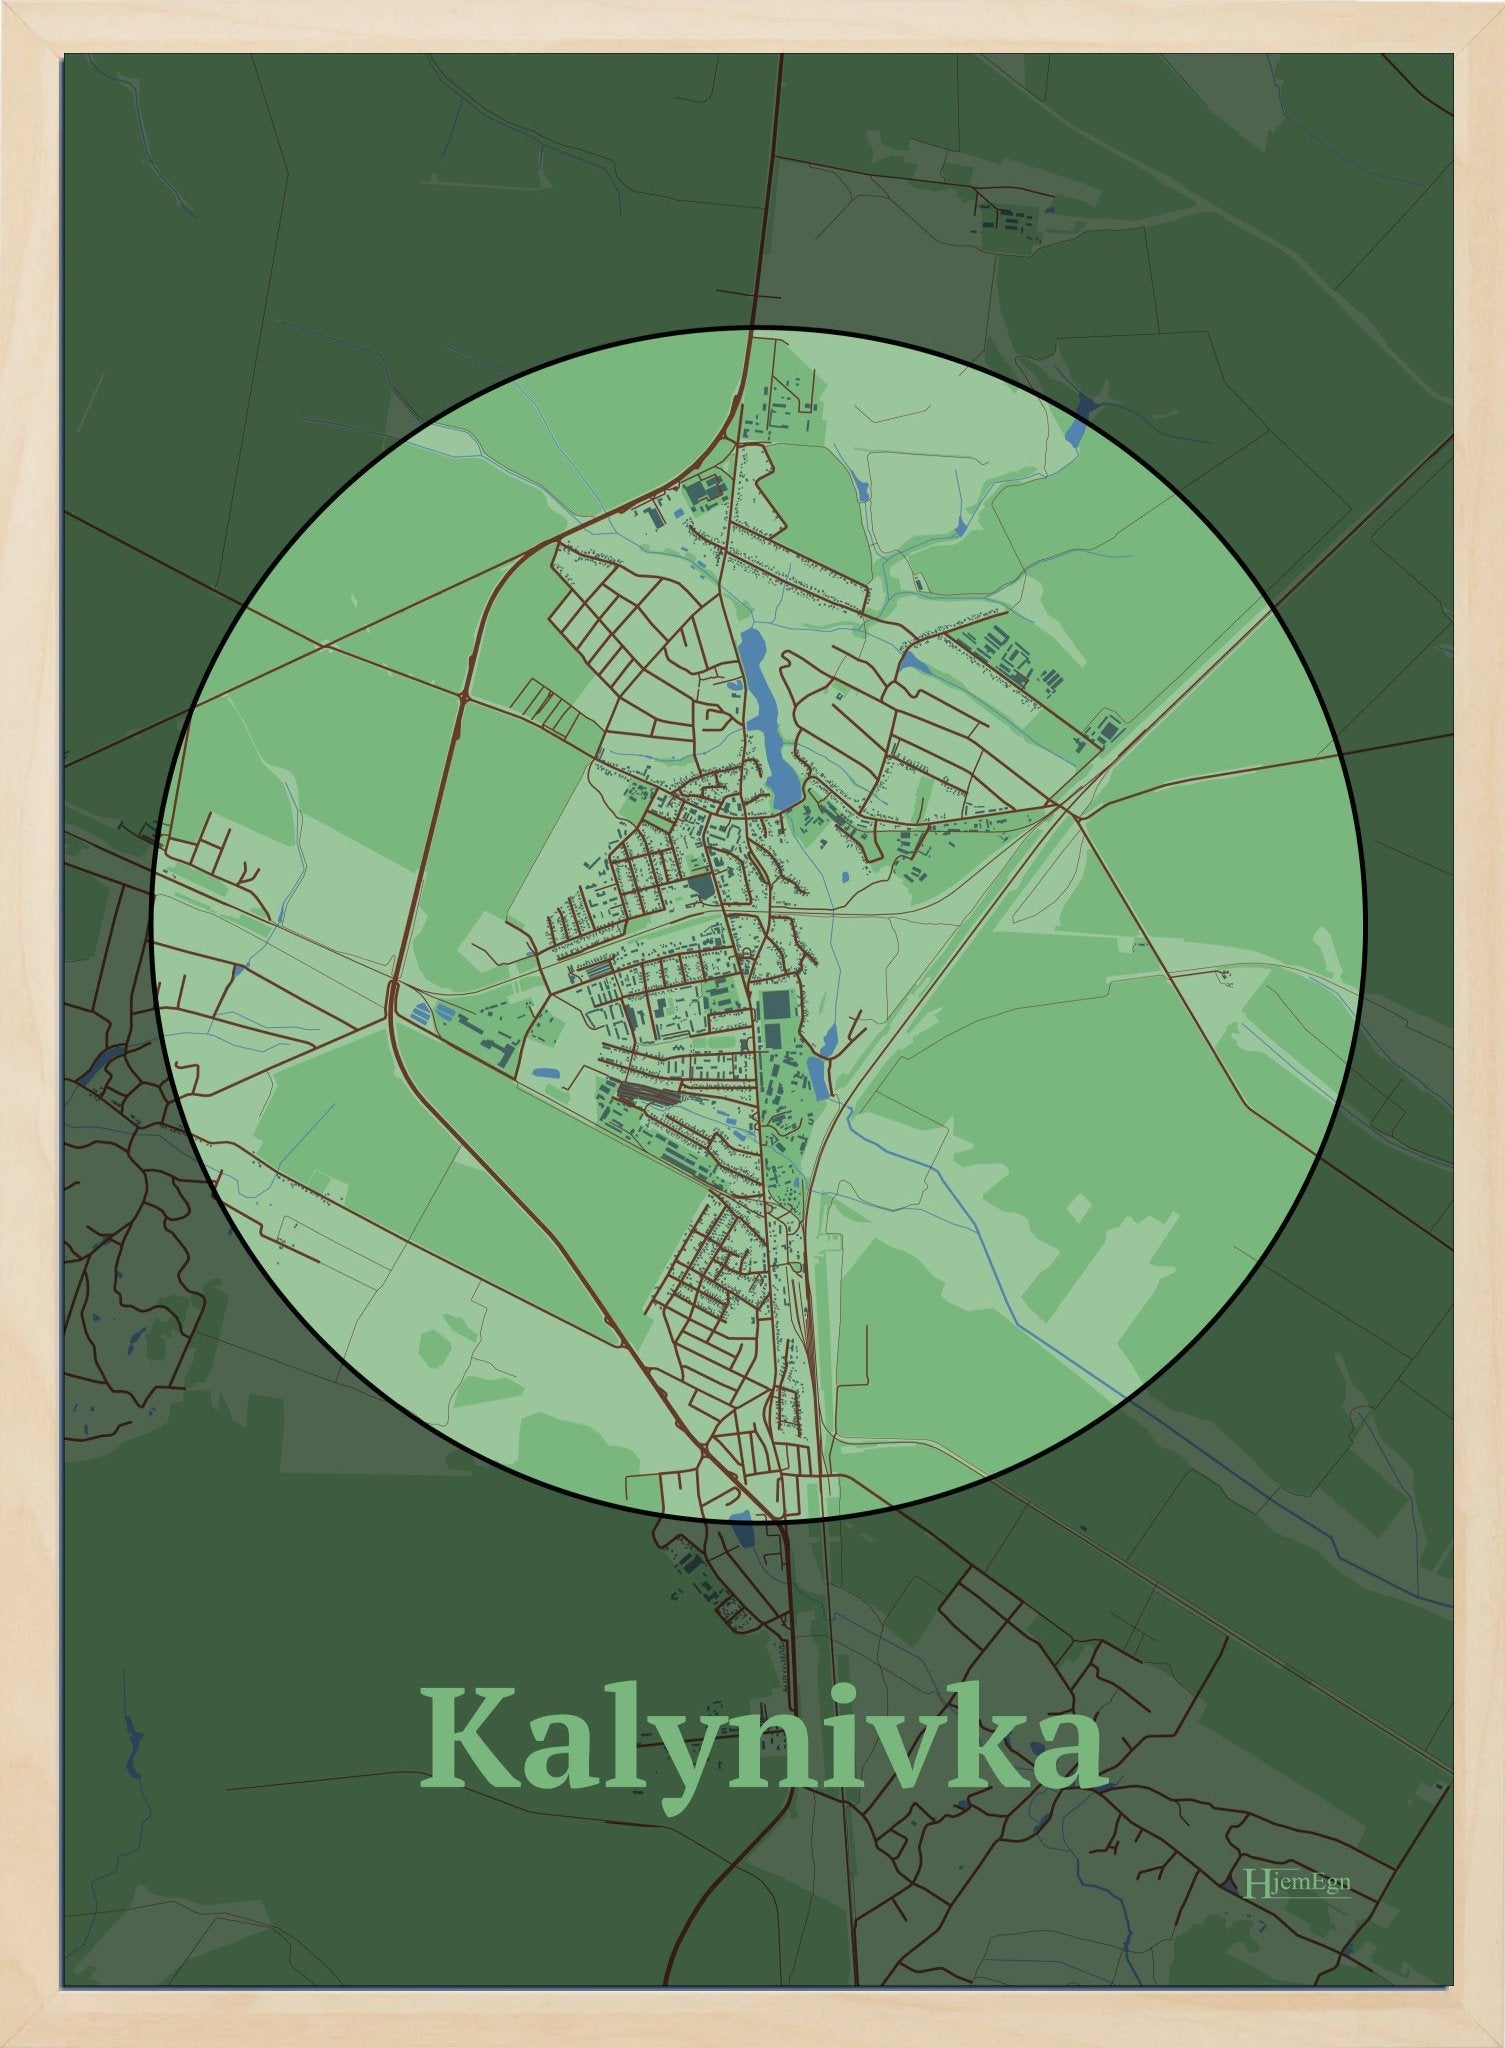 Kalynivka plakat i farve pastel grøn og HjemEgn.dk design centrum. Design bykort for Kalynivka